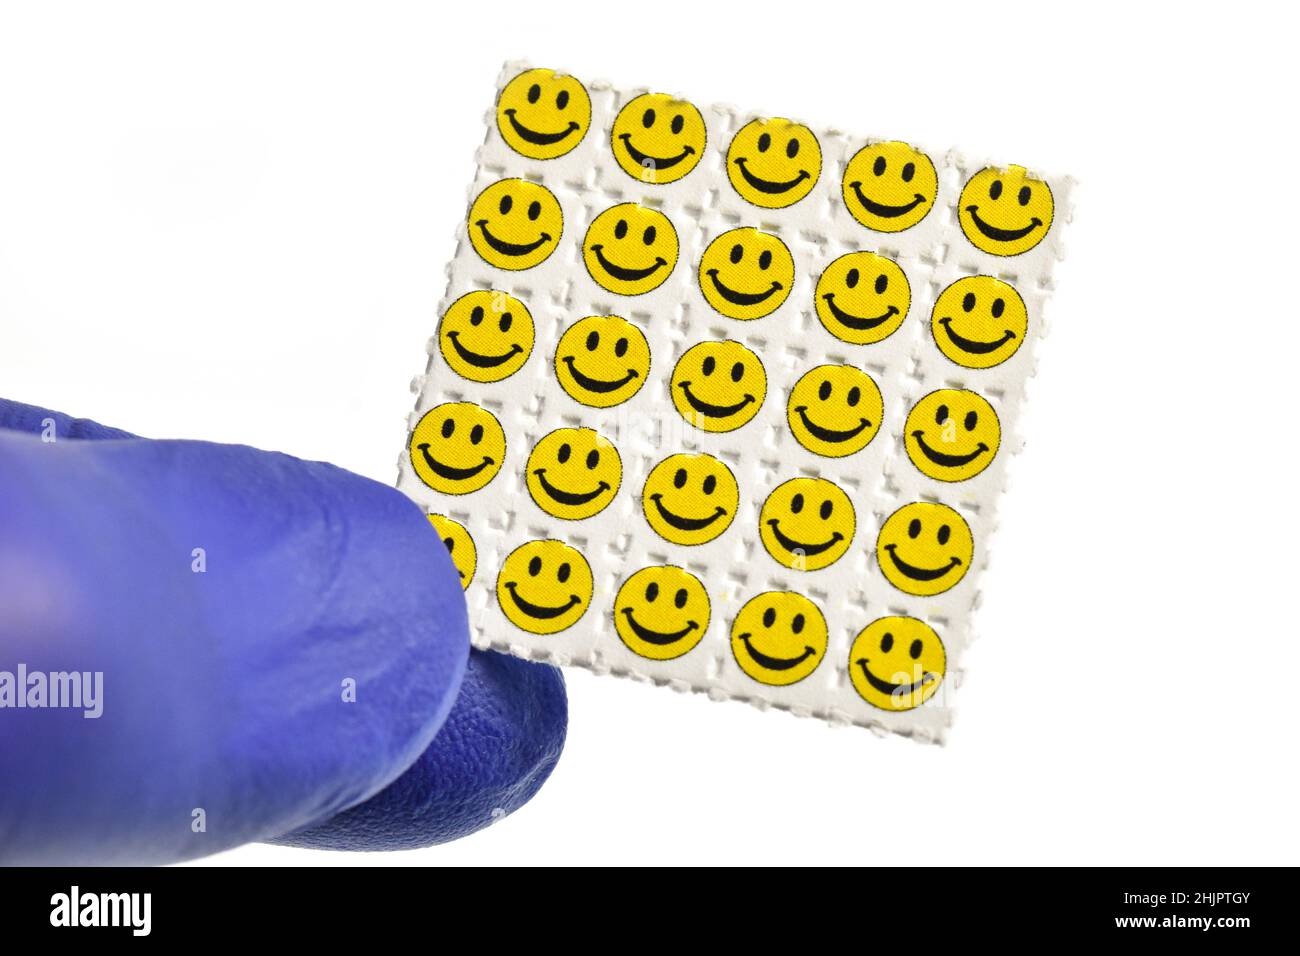 Smiley visage acide trébuchements, papier buvard imprégné de la drogue L. NSVAC- acide lysergique diéthylamide. Banque D'Images